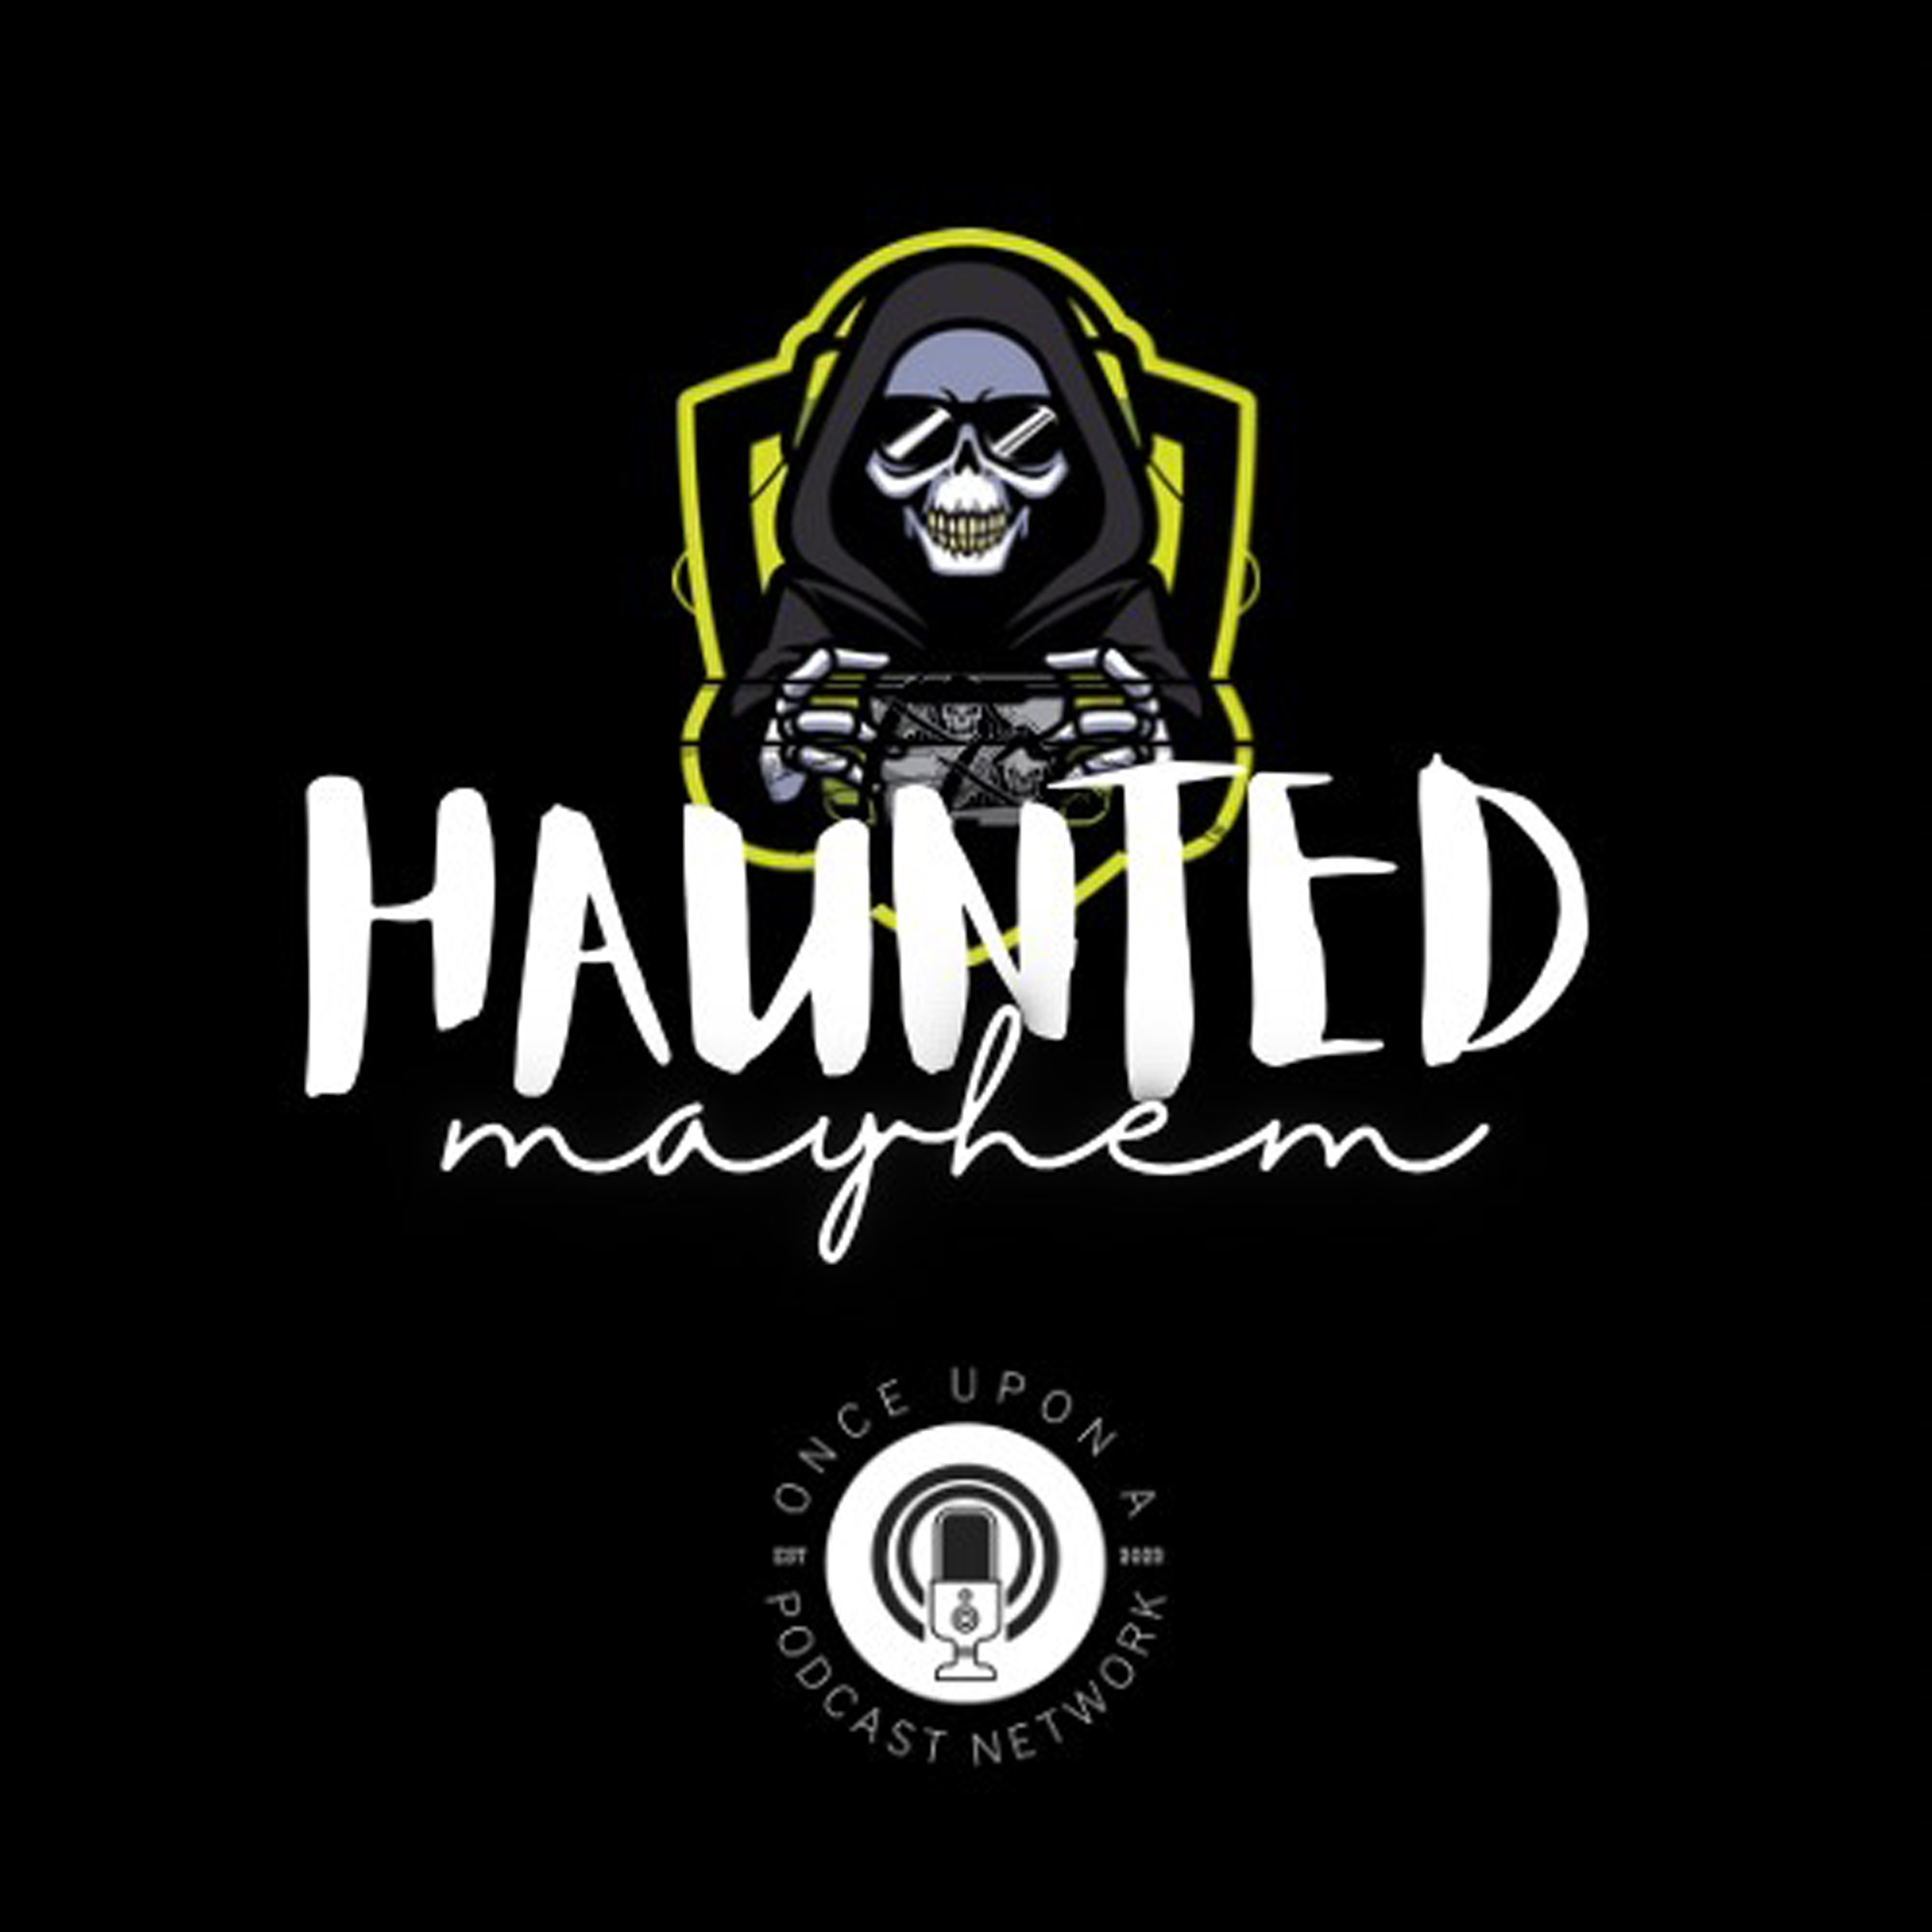 Show artwork for Haunted Mayhem